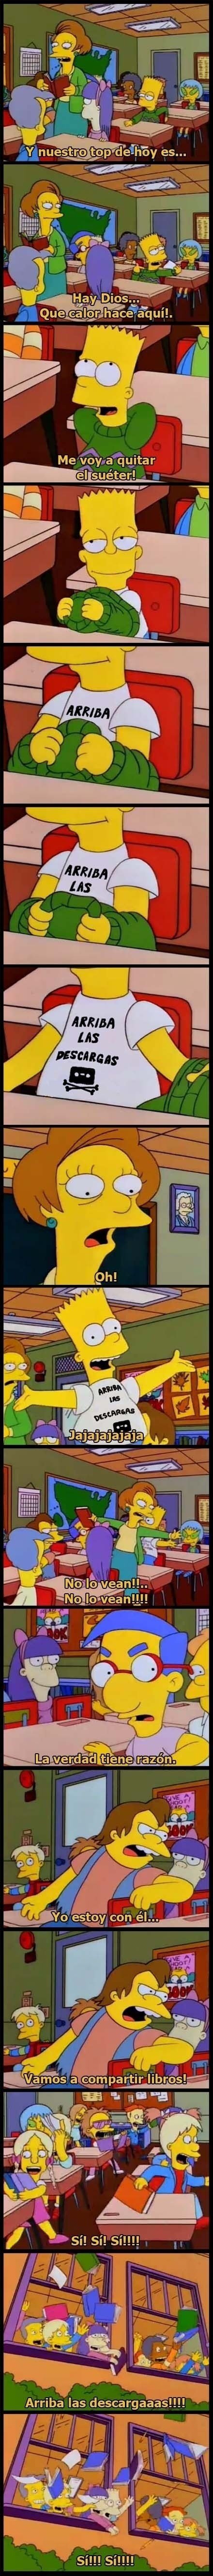 Meme_otros - Bart el revolucionario